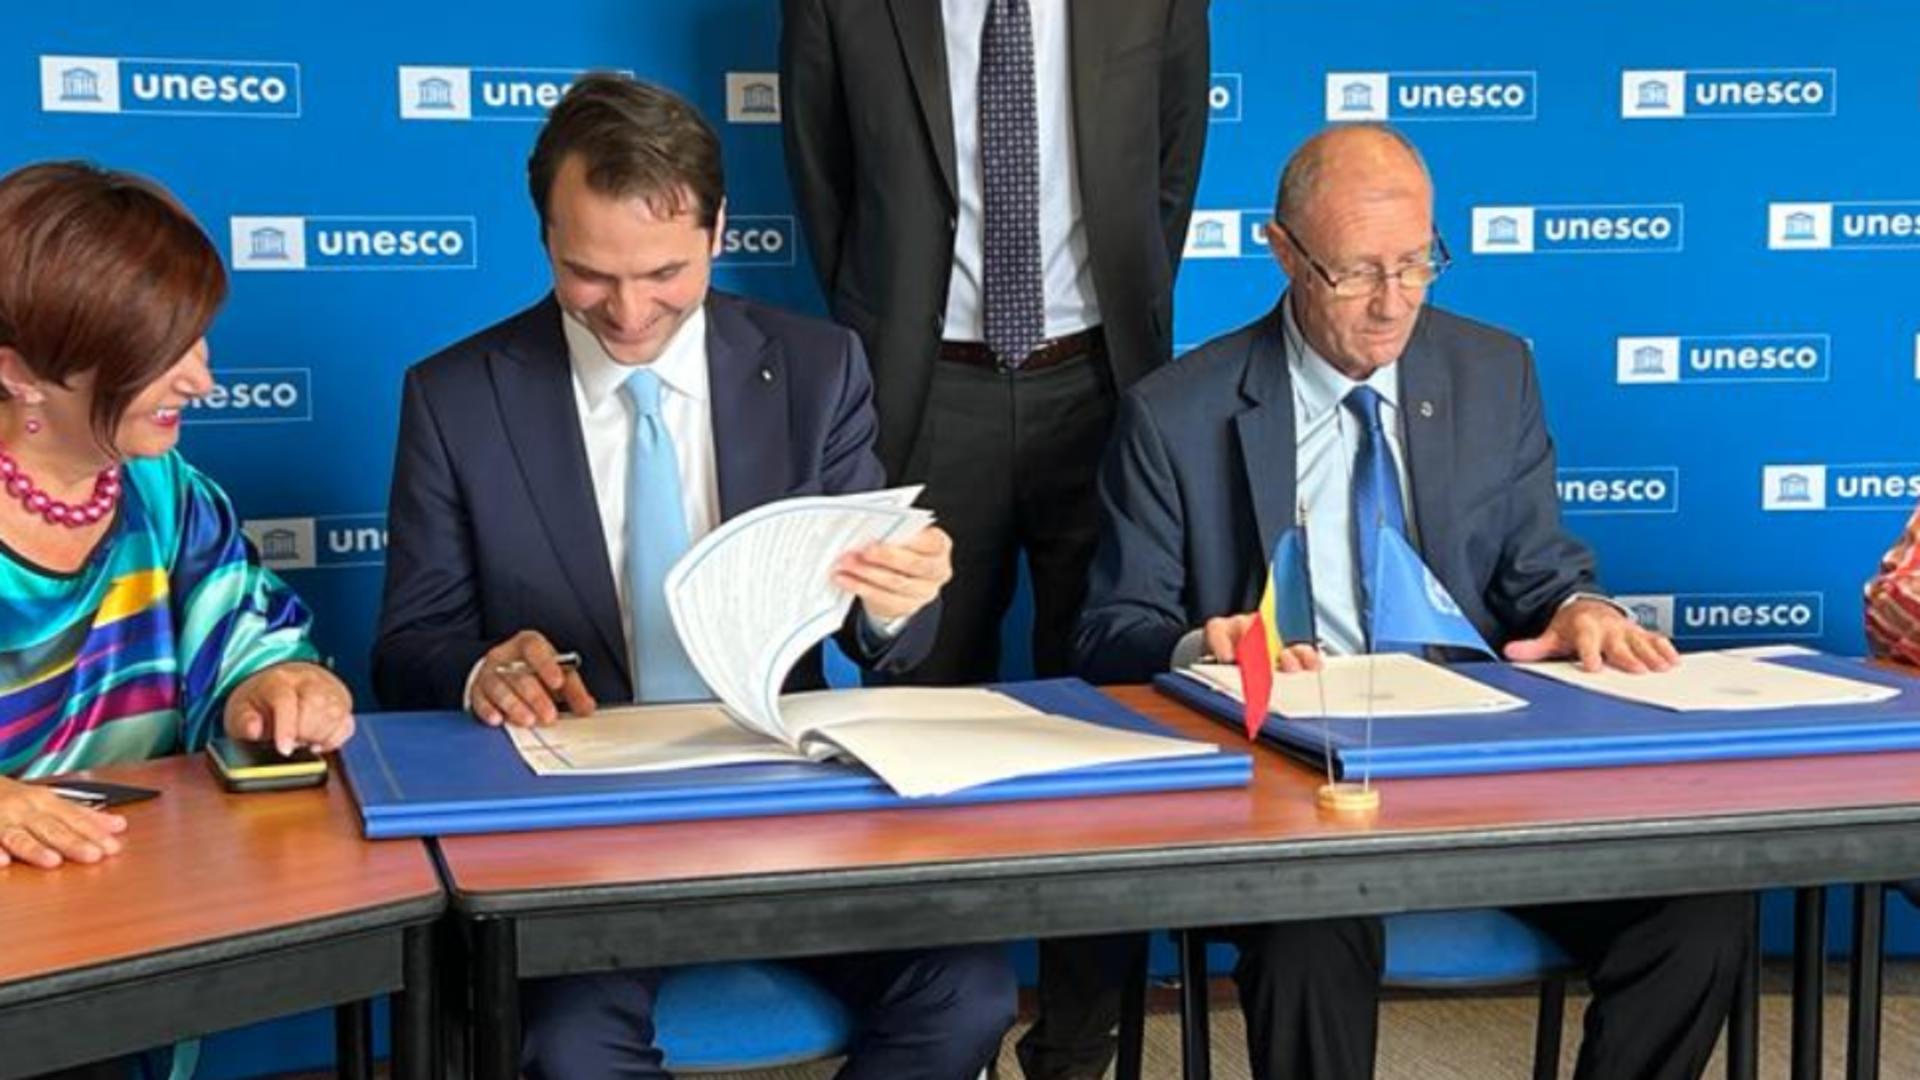 România și UNESCO, acord pentru reînnoirea CIFRA Măgurele